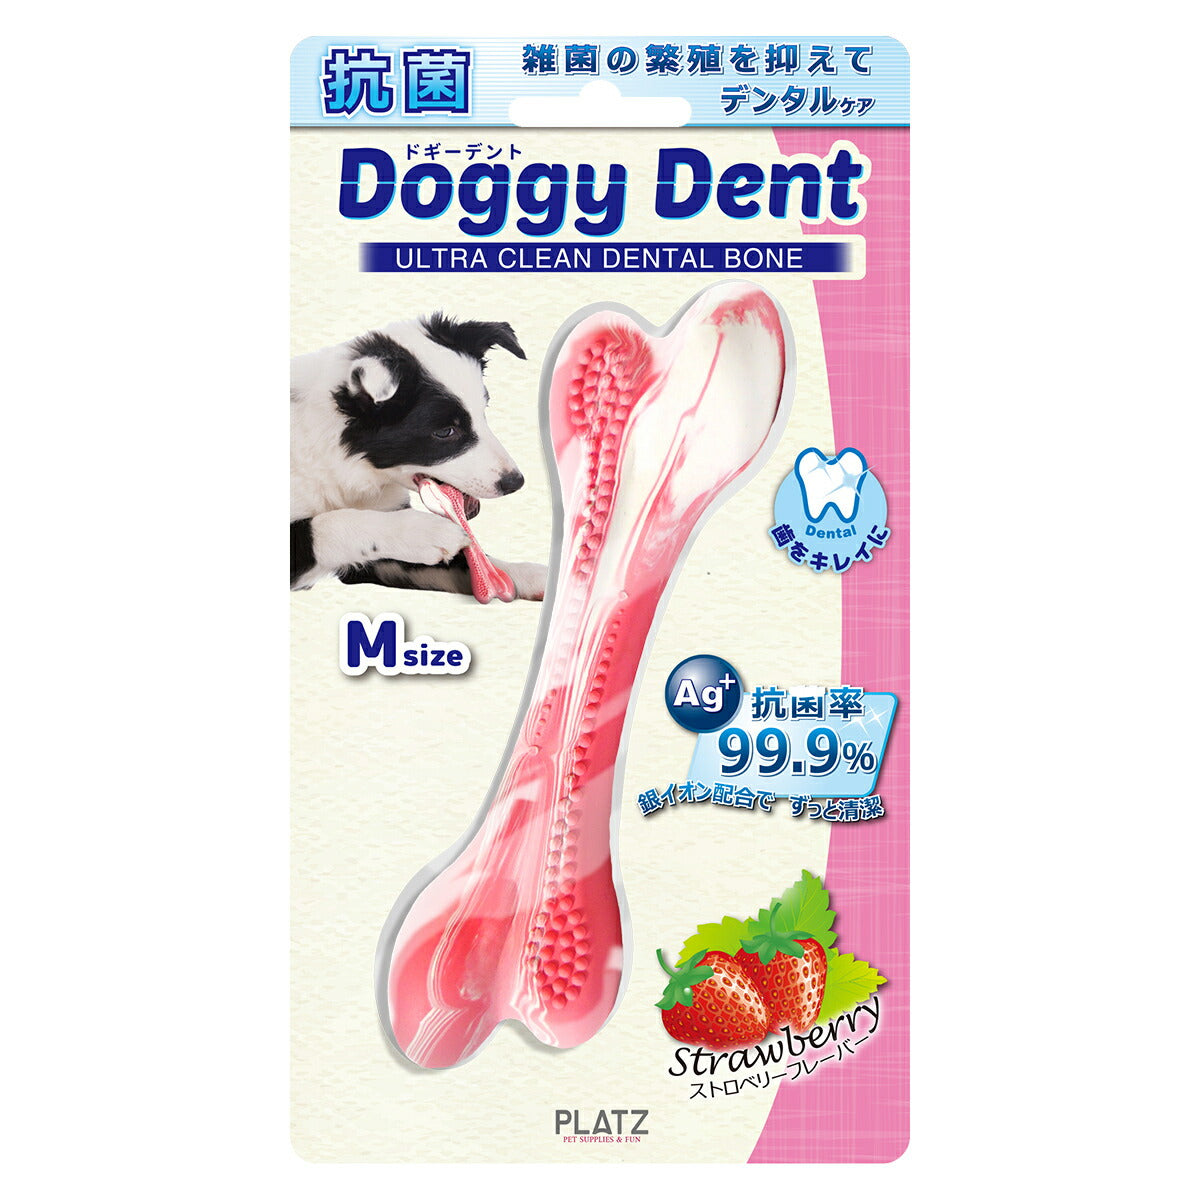 PLATZ ドギーデント ストロベリー M 犬 おもちゃ 骨型 噛む デンタルトイ ラバー 銀イオン 抗菌